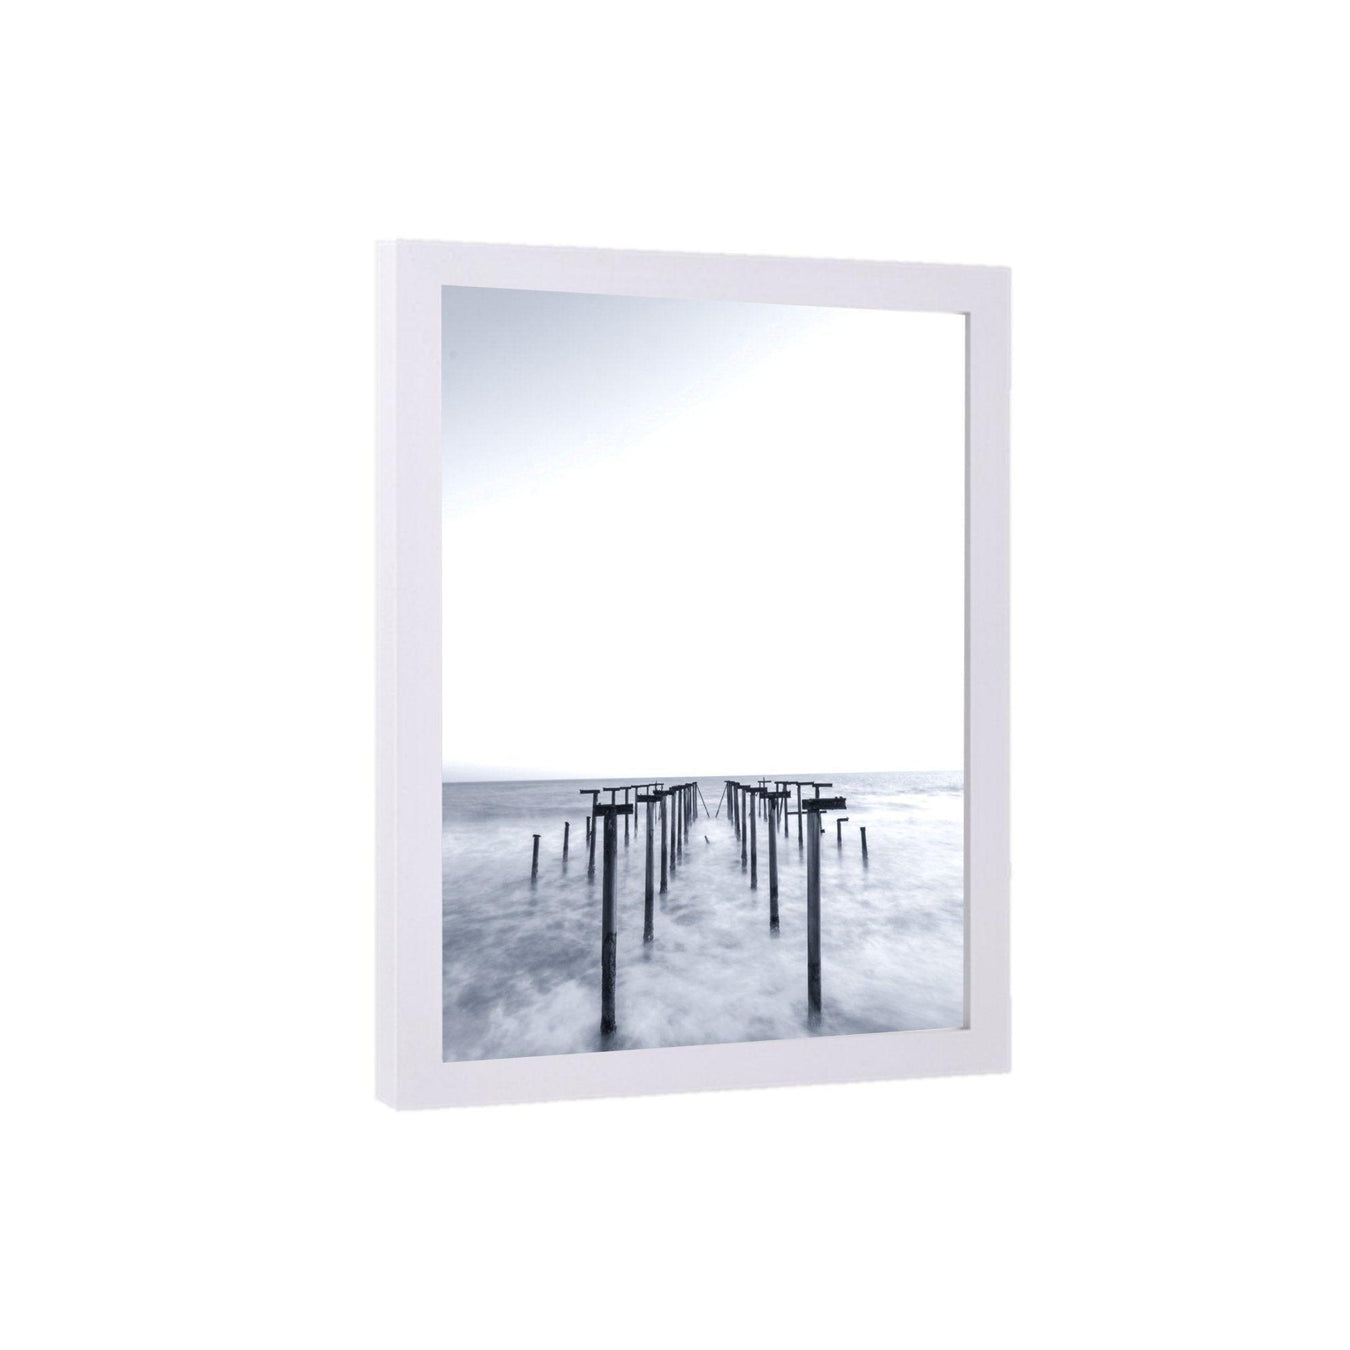 White Picture frames Custom Framing - Modern Memory Design Picture frames - New Jersey Frame Shop Custom Framing